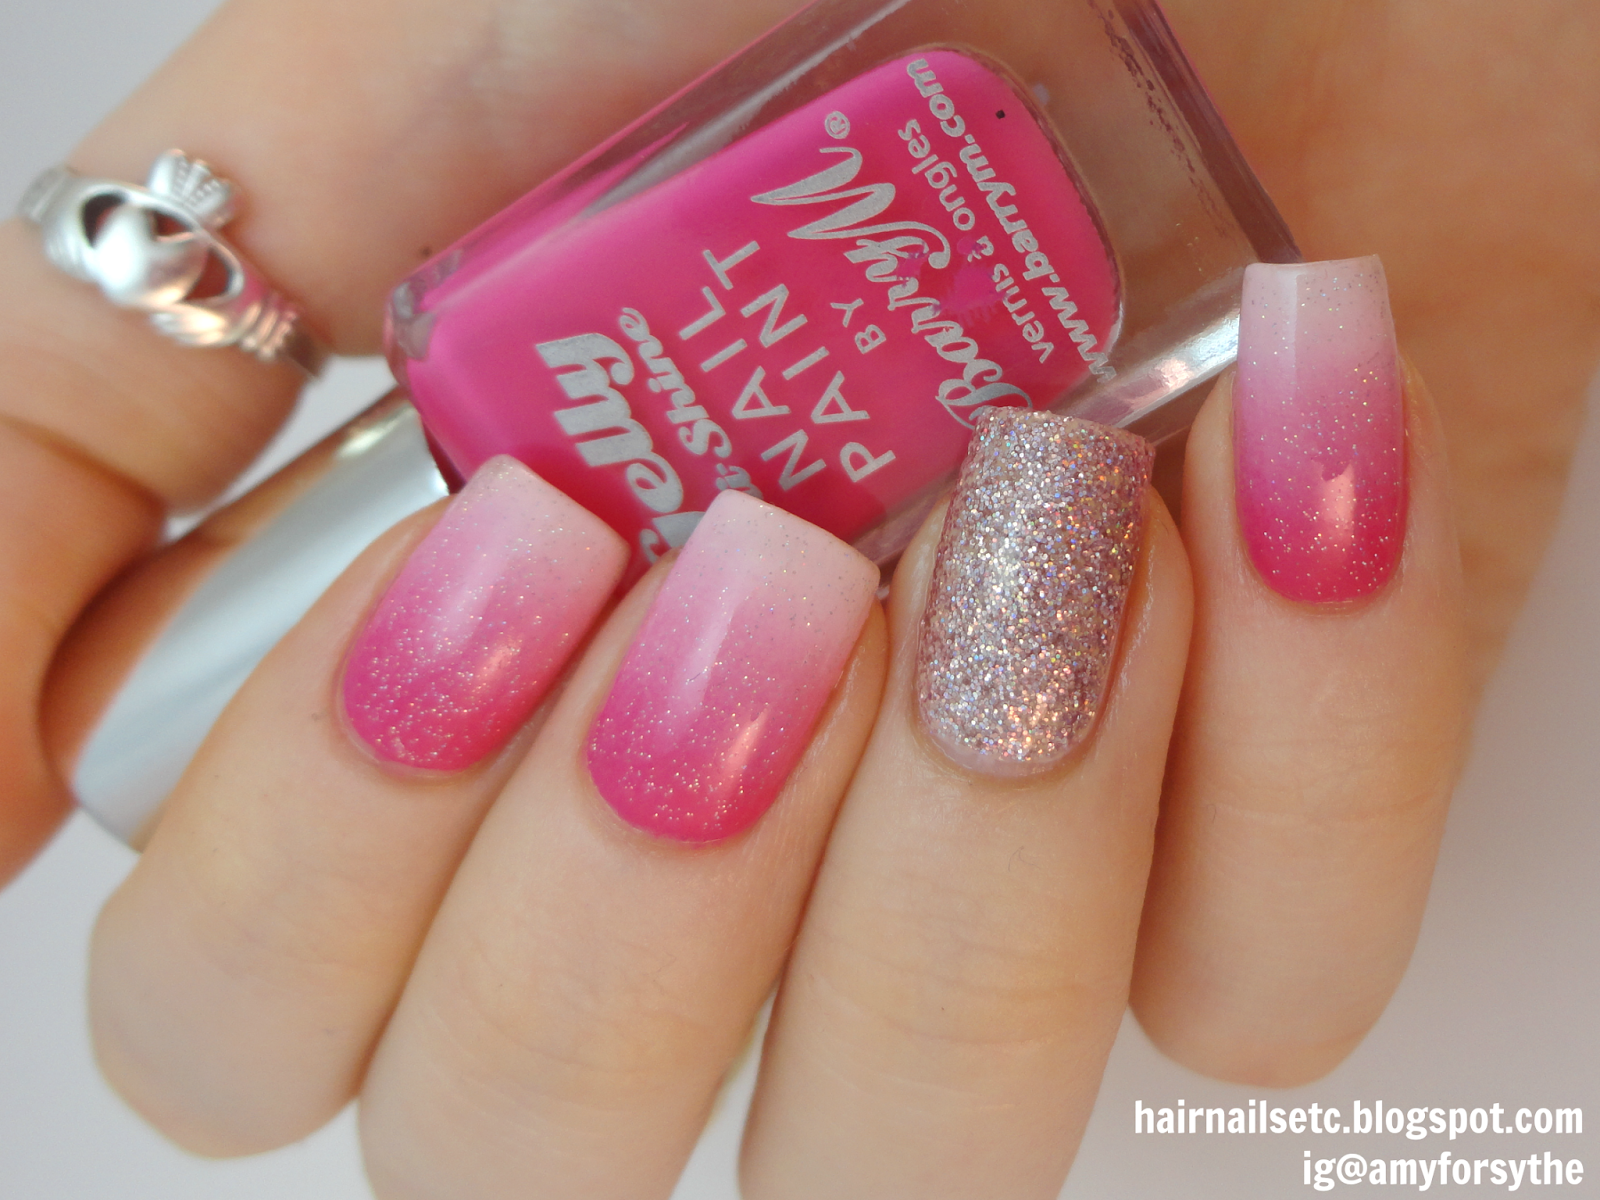 Pink Gradient Nail Art with Glitter - hairnailsetc.blogspot.co.uk / ig@amyforsythe